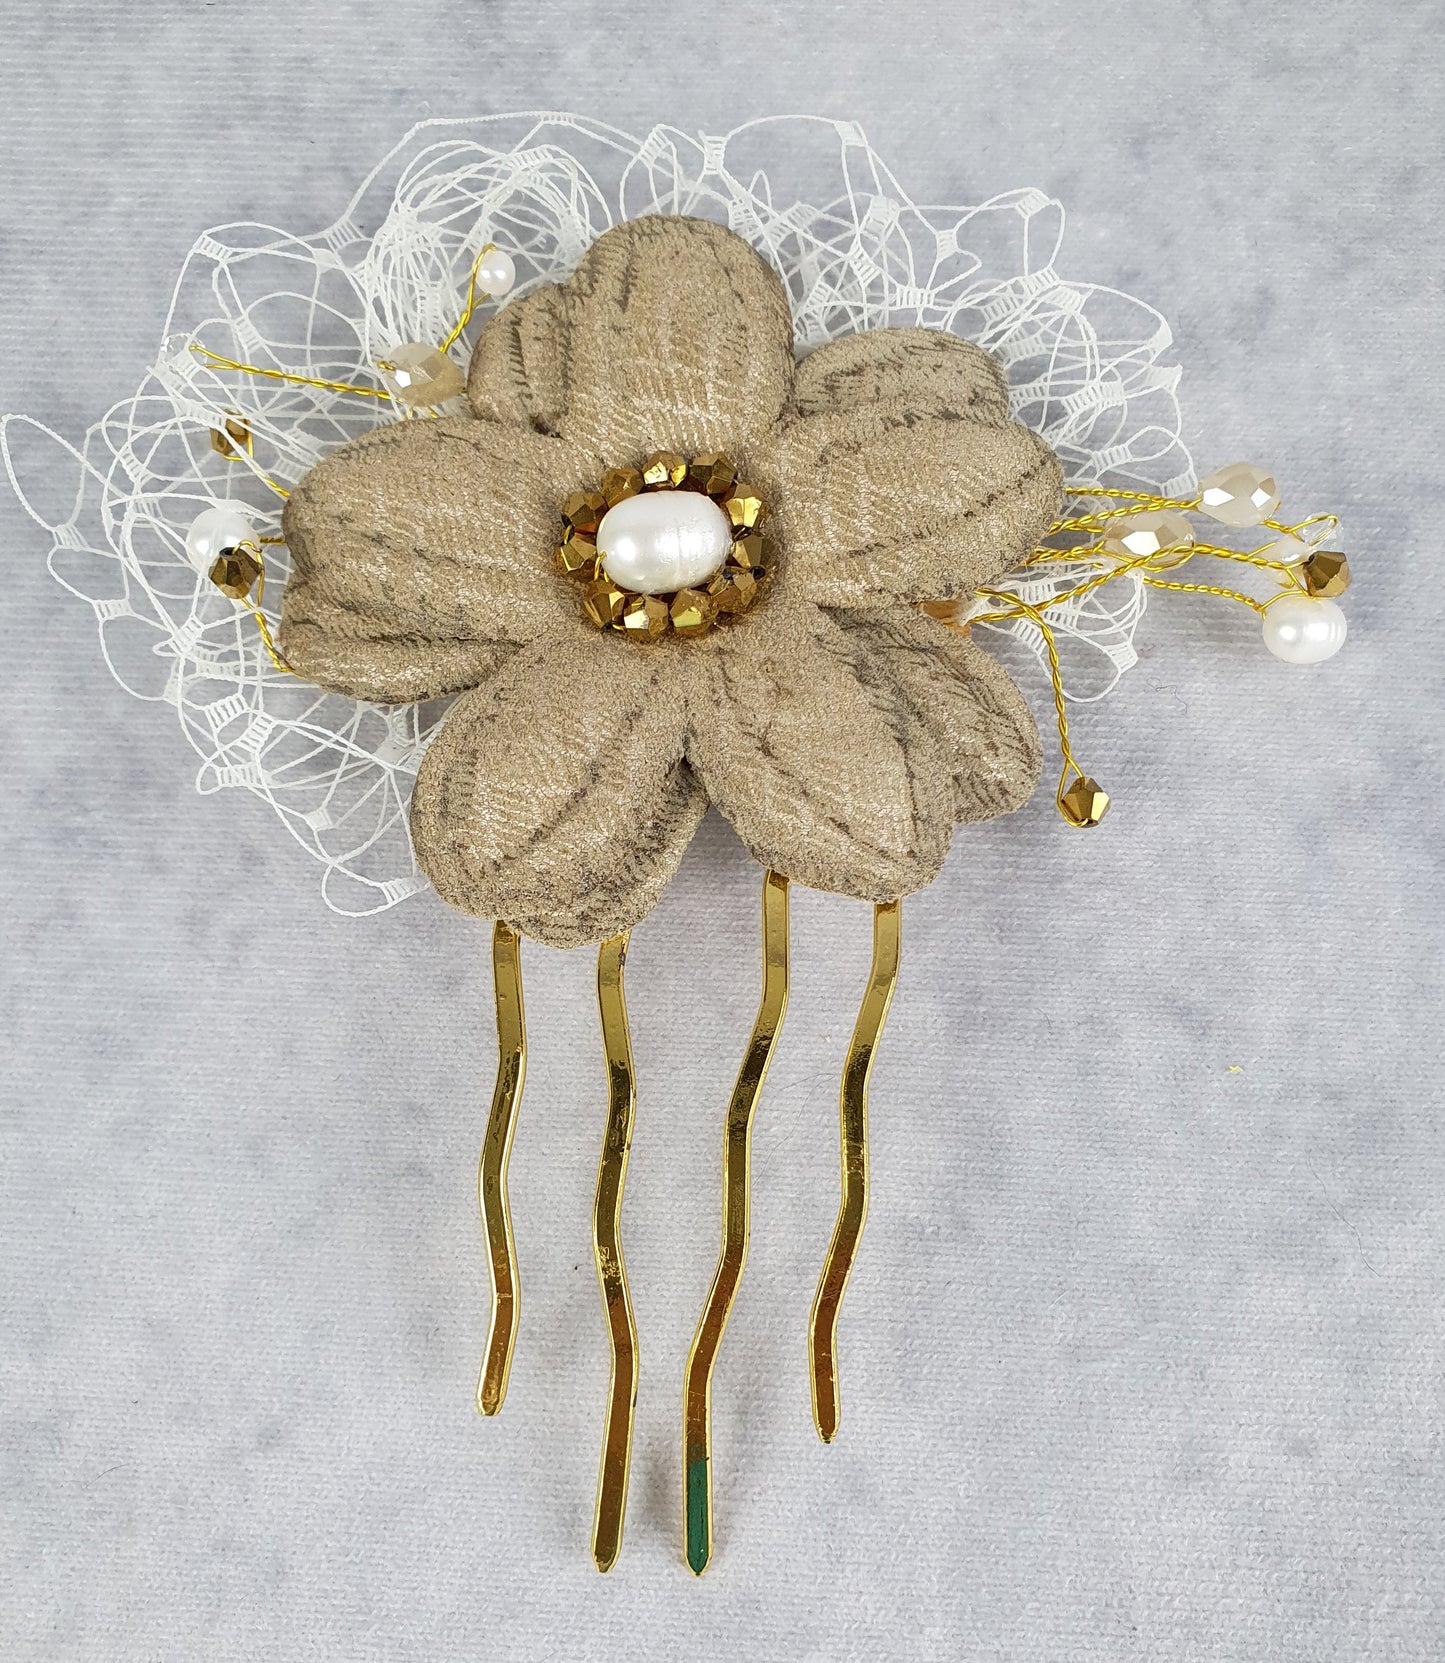 Peineta de novia hecha a mano con flor de cuero, Elegante y única para ocasiones especiales, complementos para el cabello